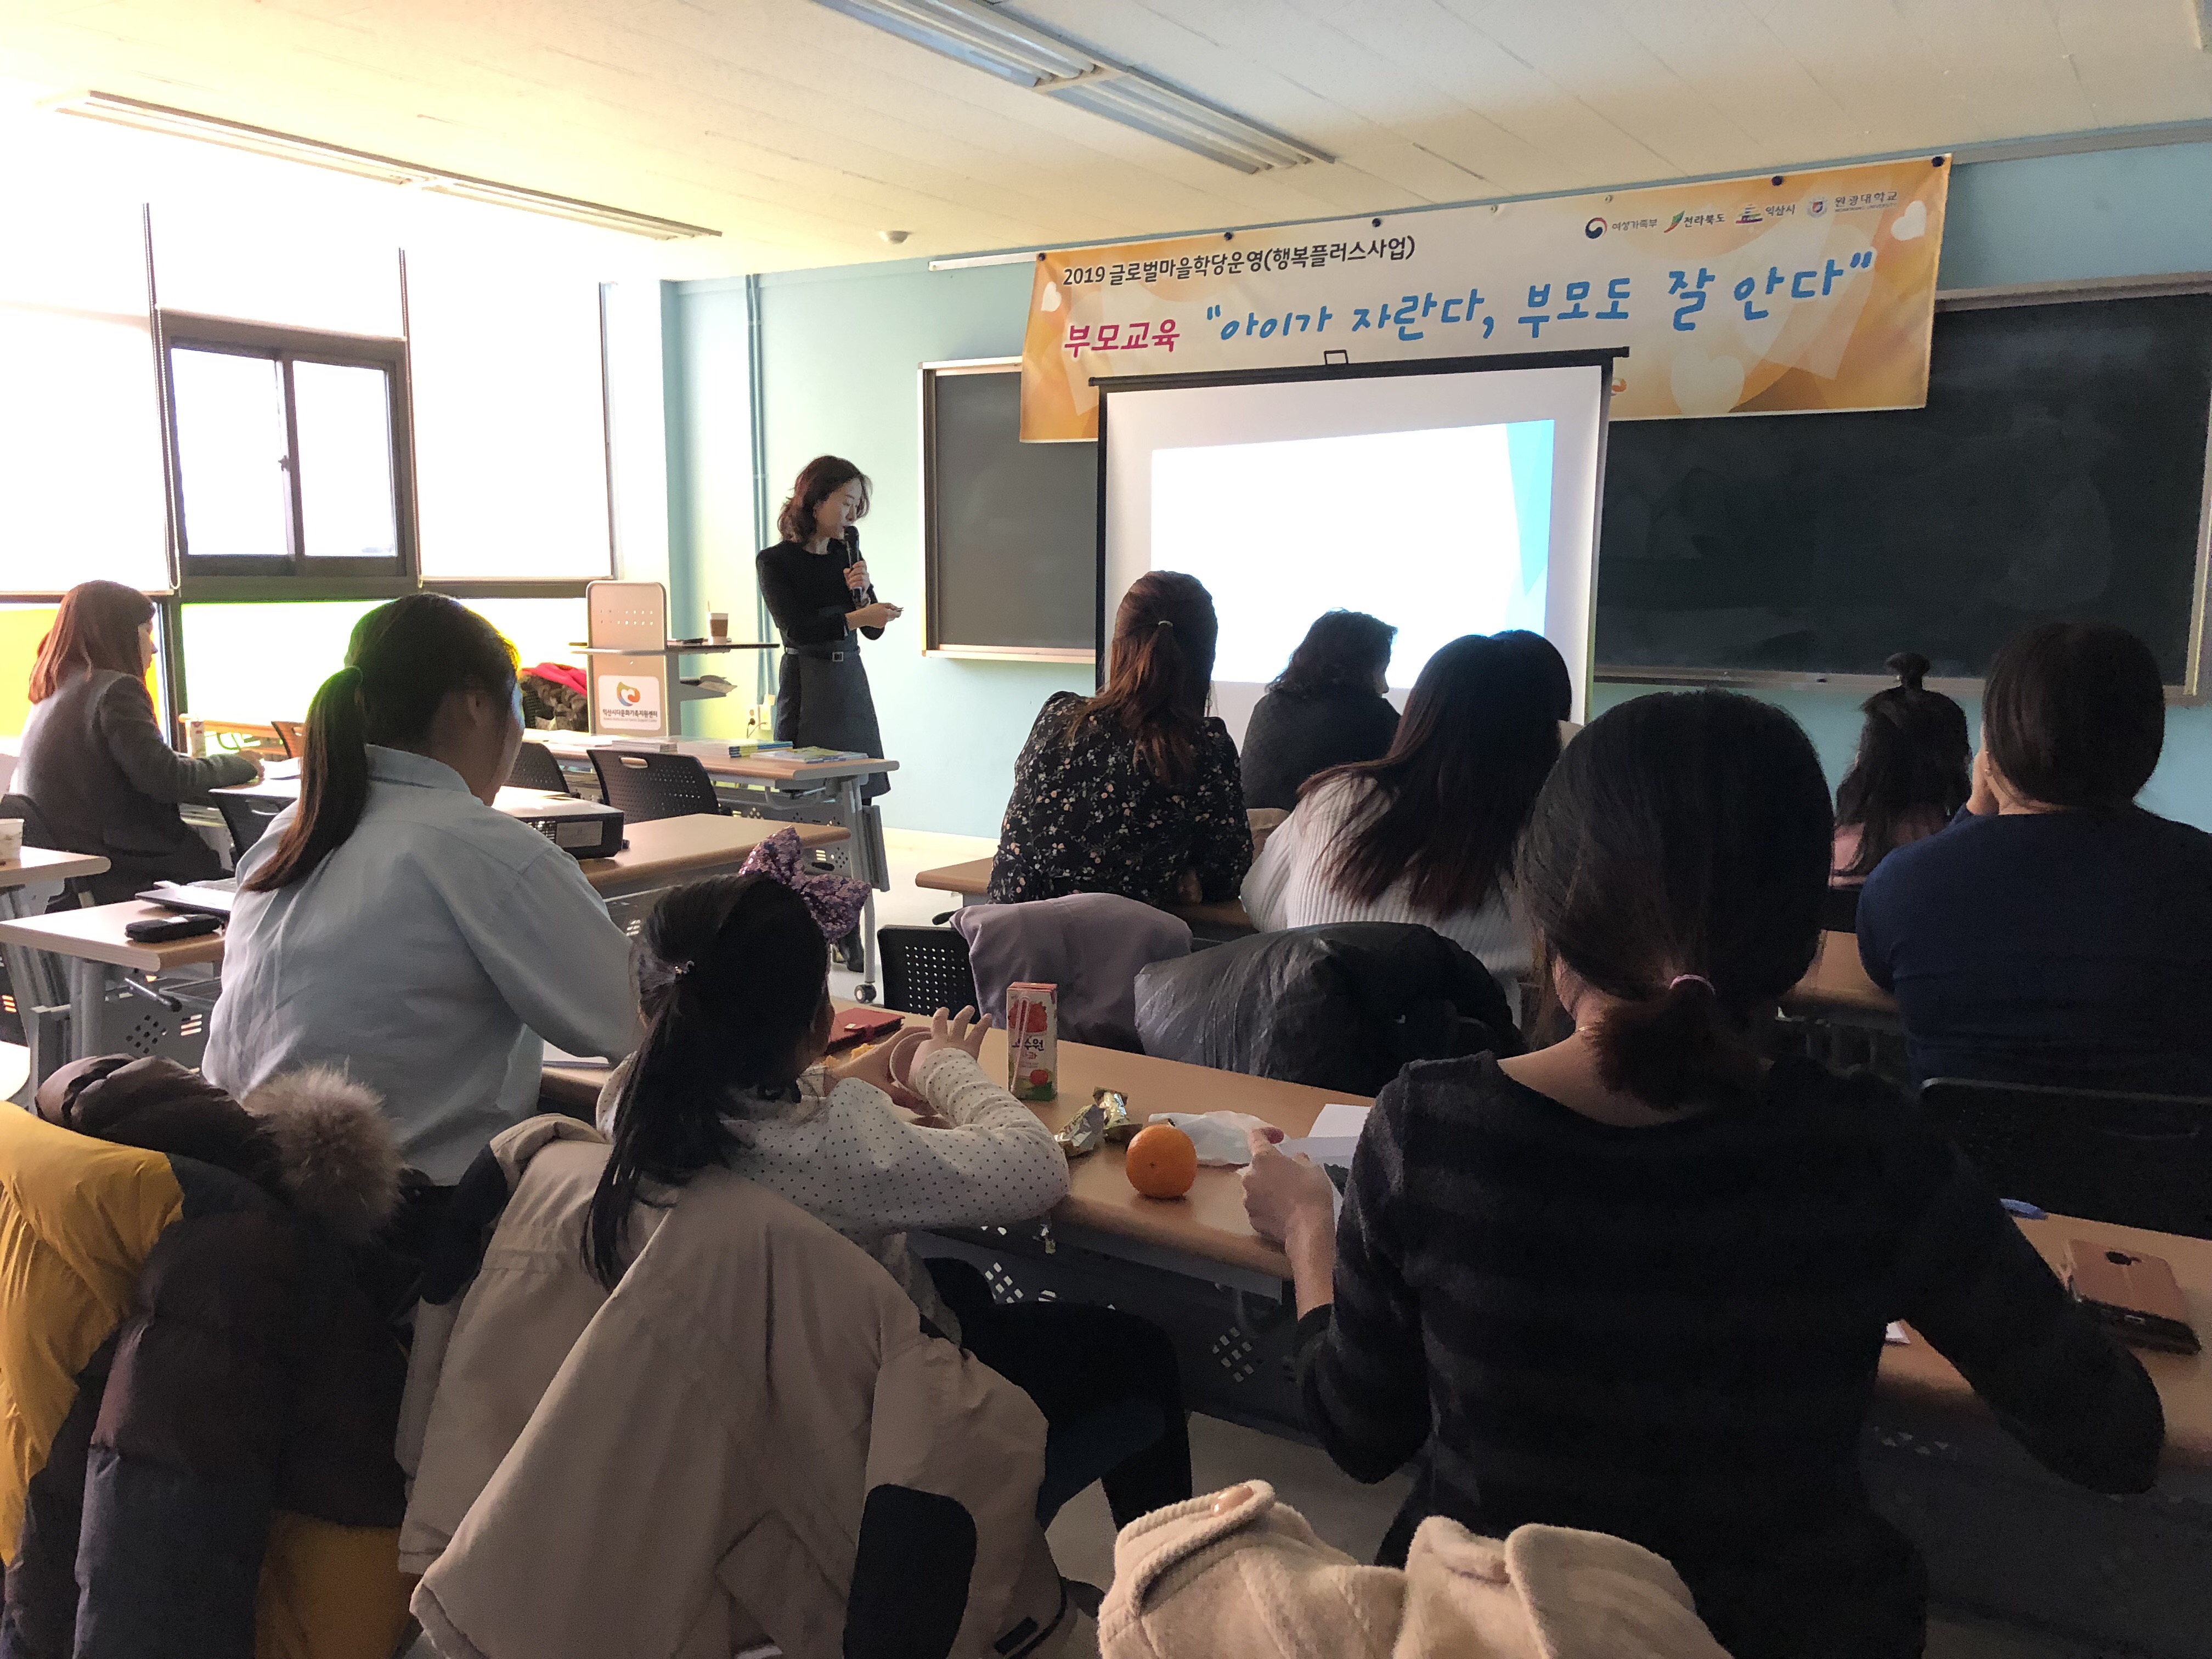 2019 글로벌마을학당운영(행복플러스사업) - 1차 부모교육